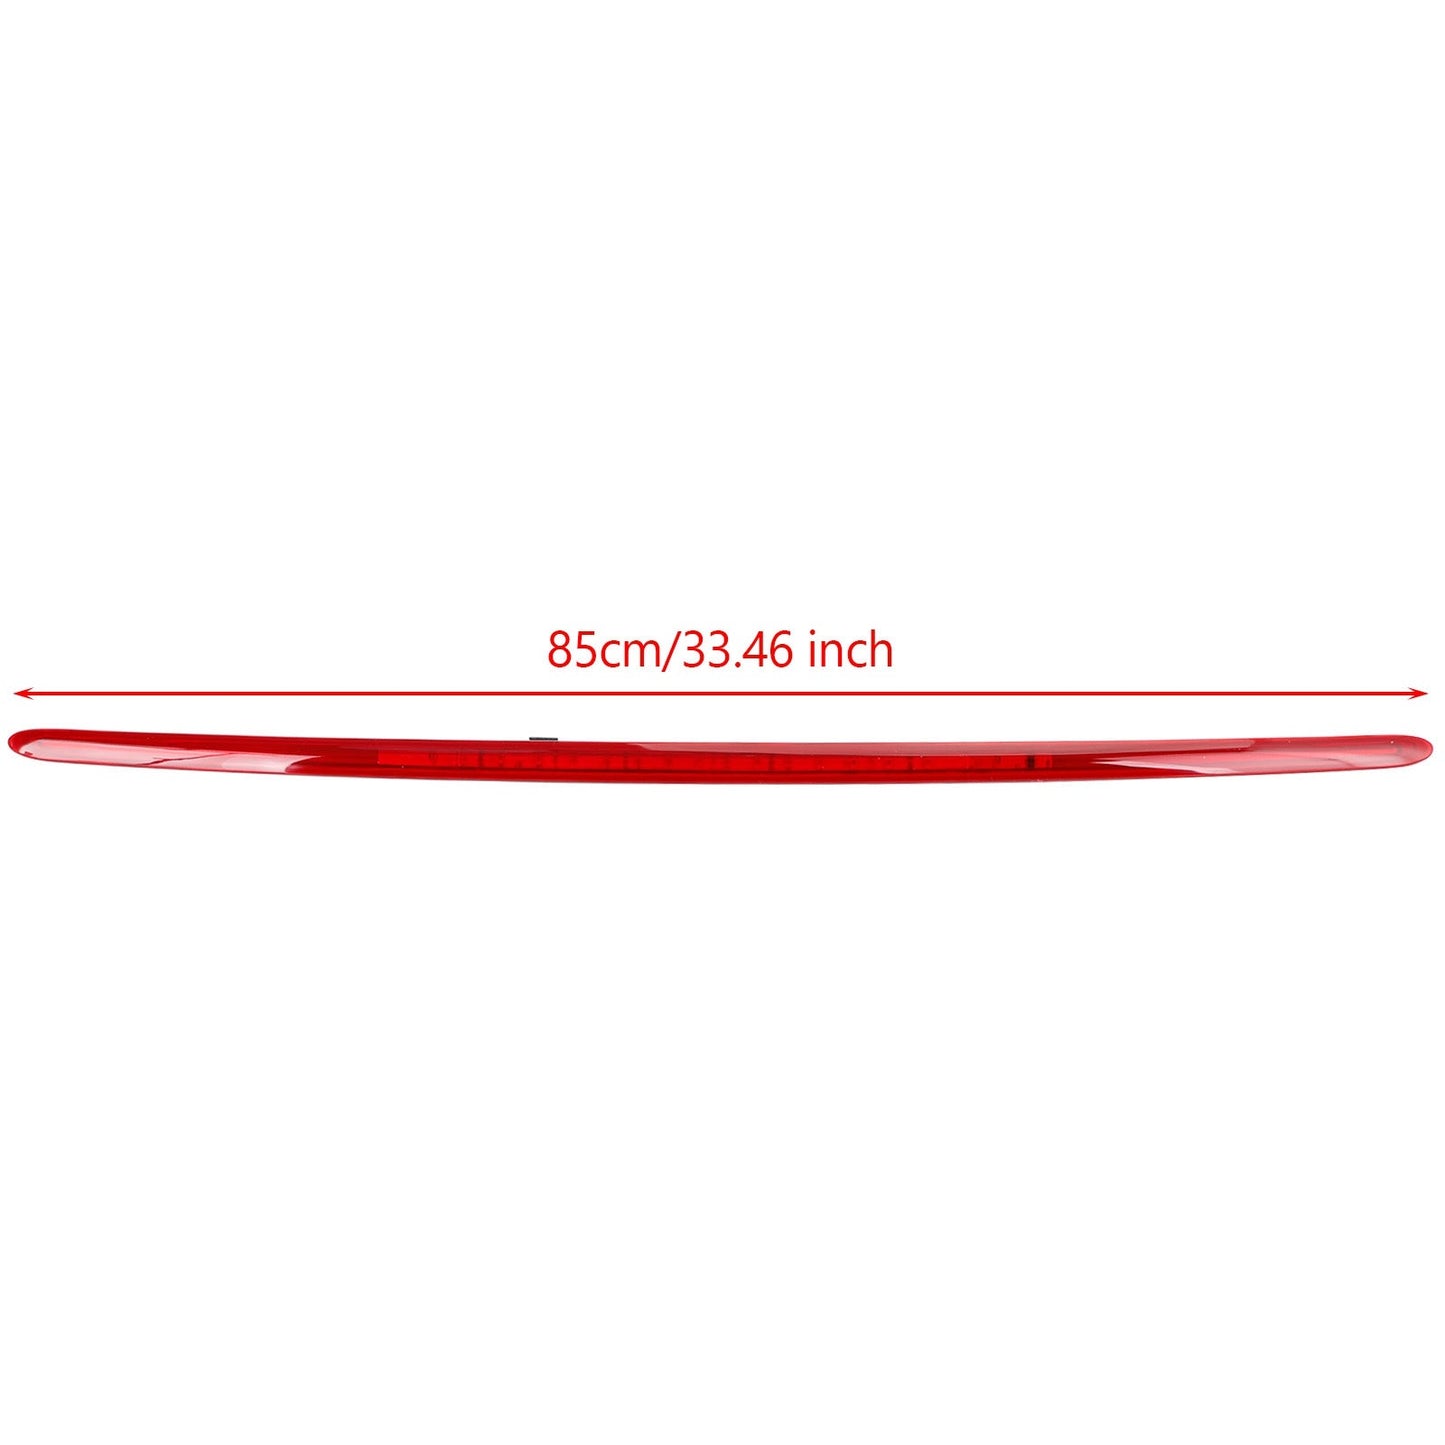 Drittes Bremslicht für Mini Cooper R55 Wagon mit rotem Glas 63257167413